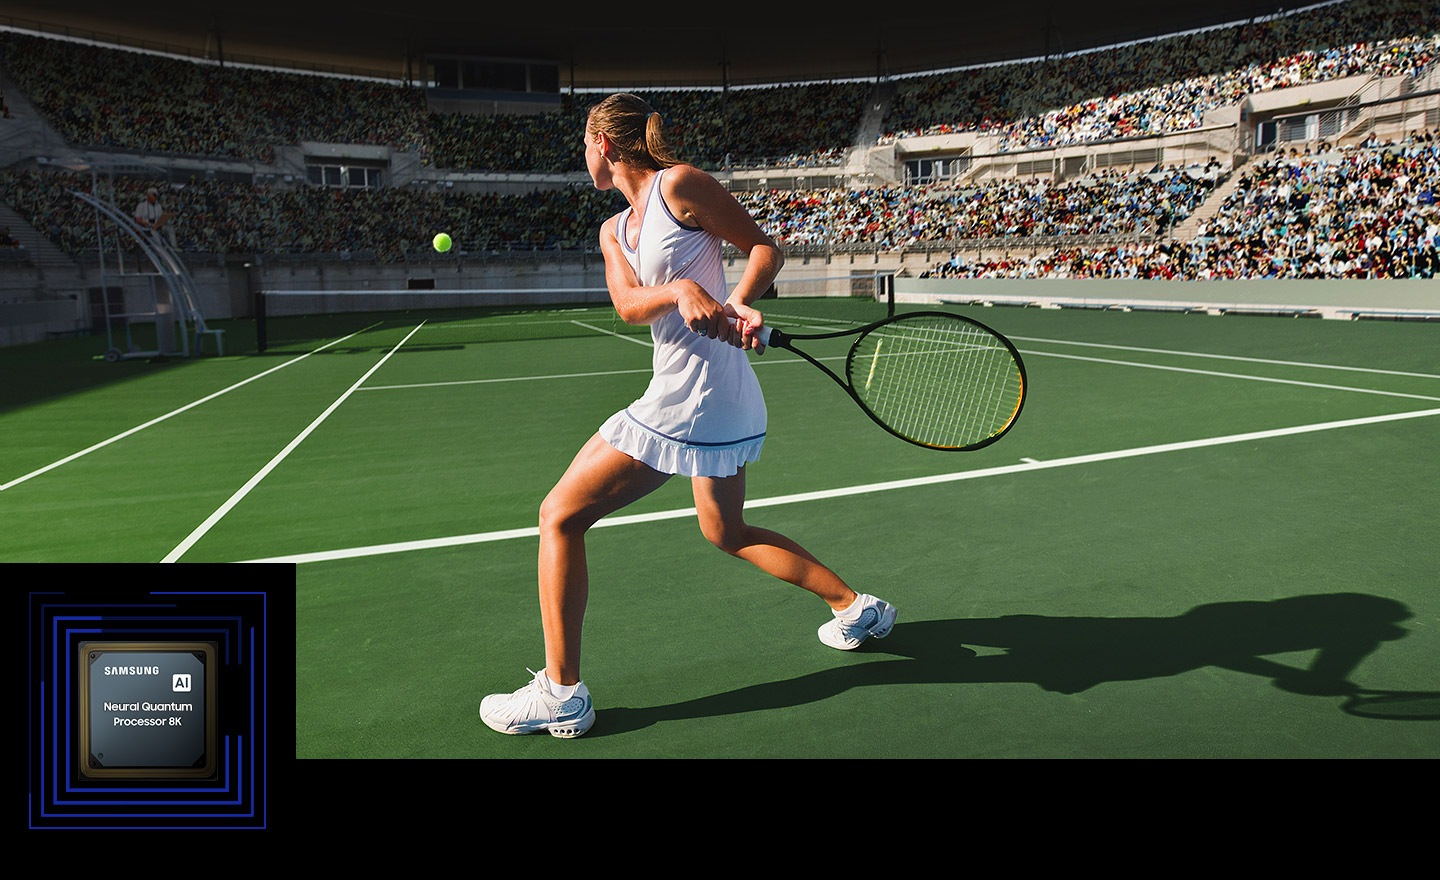 Ženska igra tenis pred veliko množico.  Neo Quantum Processor 8K je prikazan v spodnjem levem kotu.